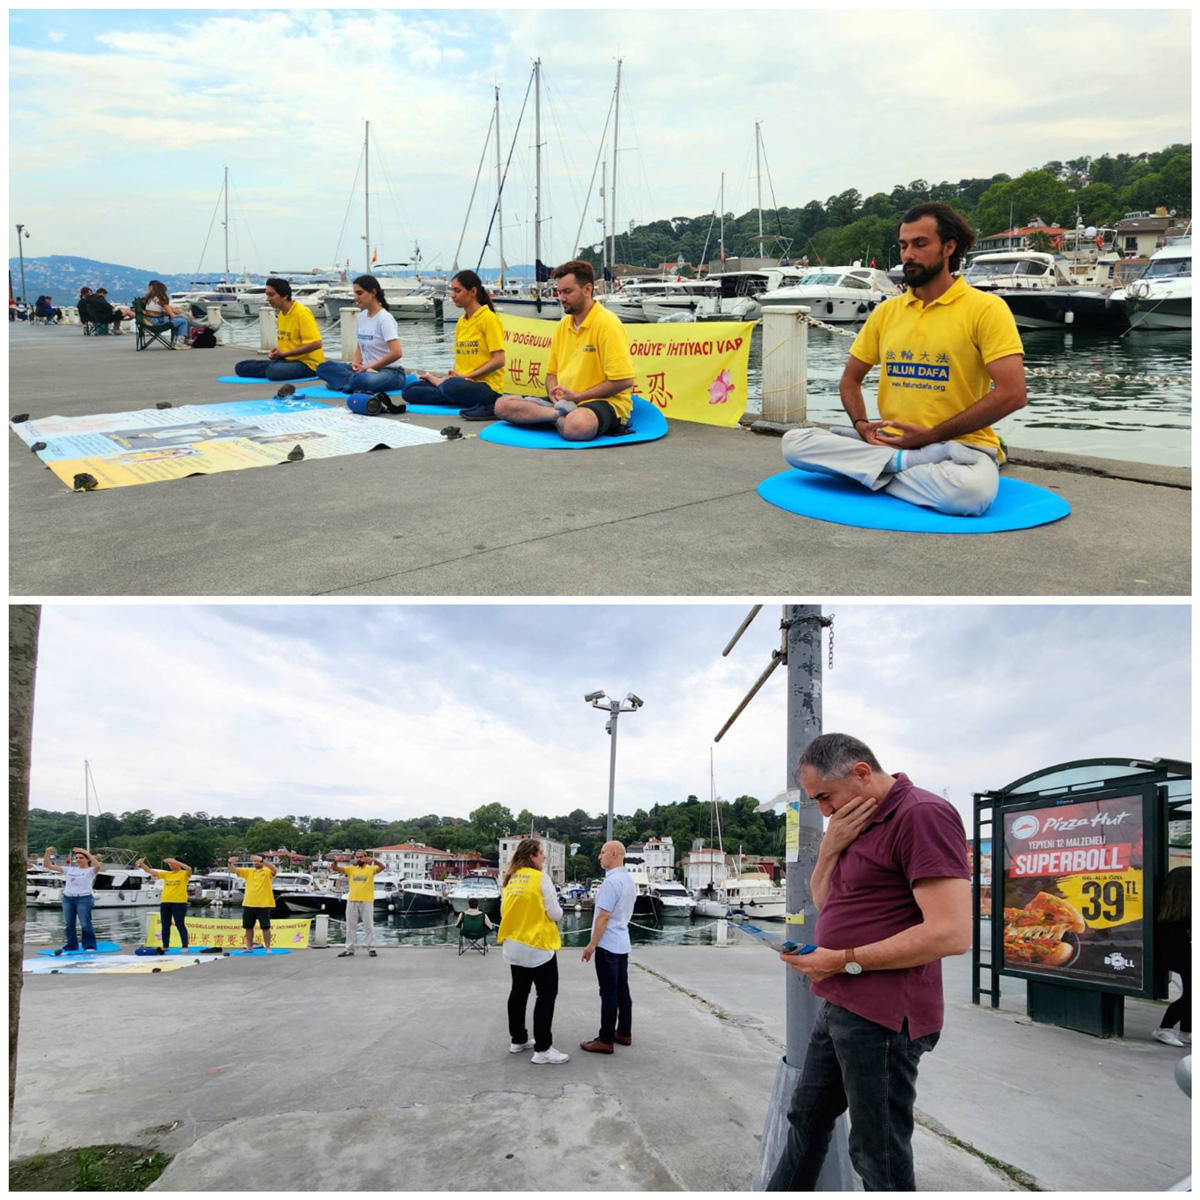 Image for article Turquia: Residentes de Istambul elogiam os princípios do Falun Dafa de “Verdade-Compaixão-Tolerância”